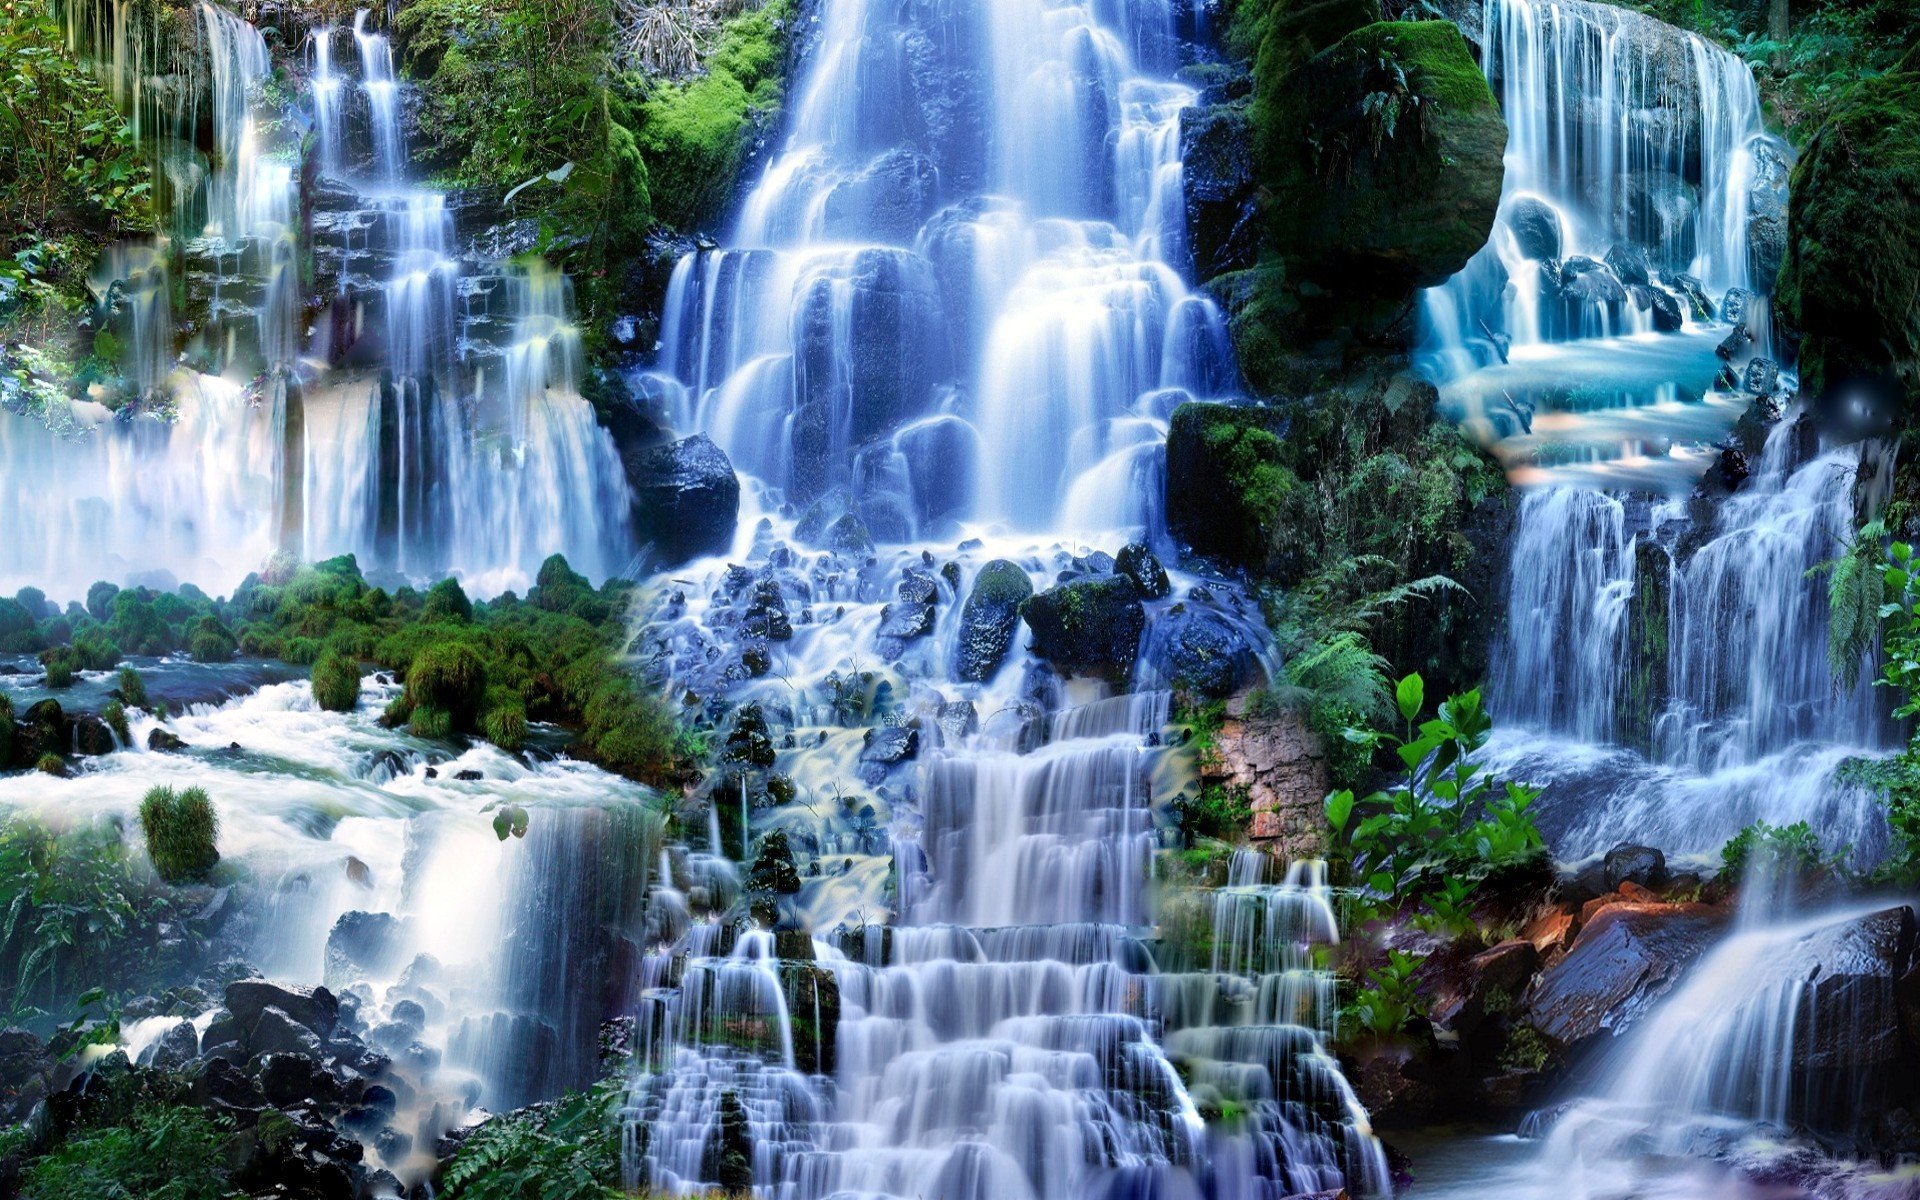 Картинки на телефон на заставку красивые живые. Водопад Мосбрей. Водопад Сангардак. Фотоколлаж водопады. Живая природа водопады.